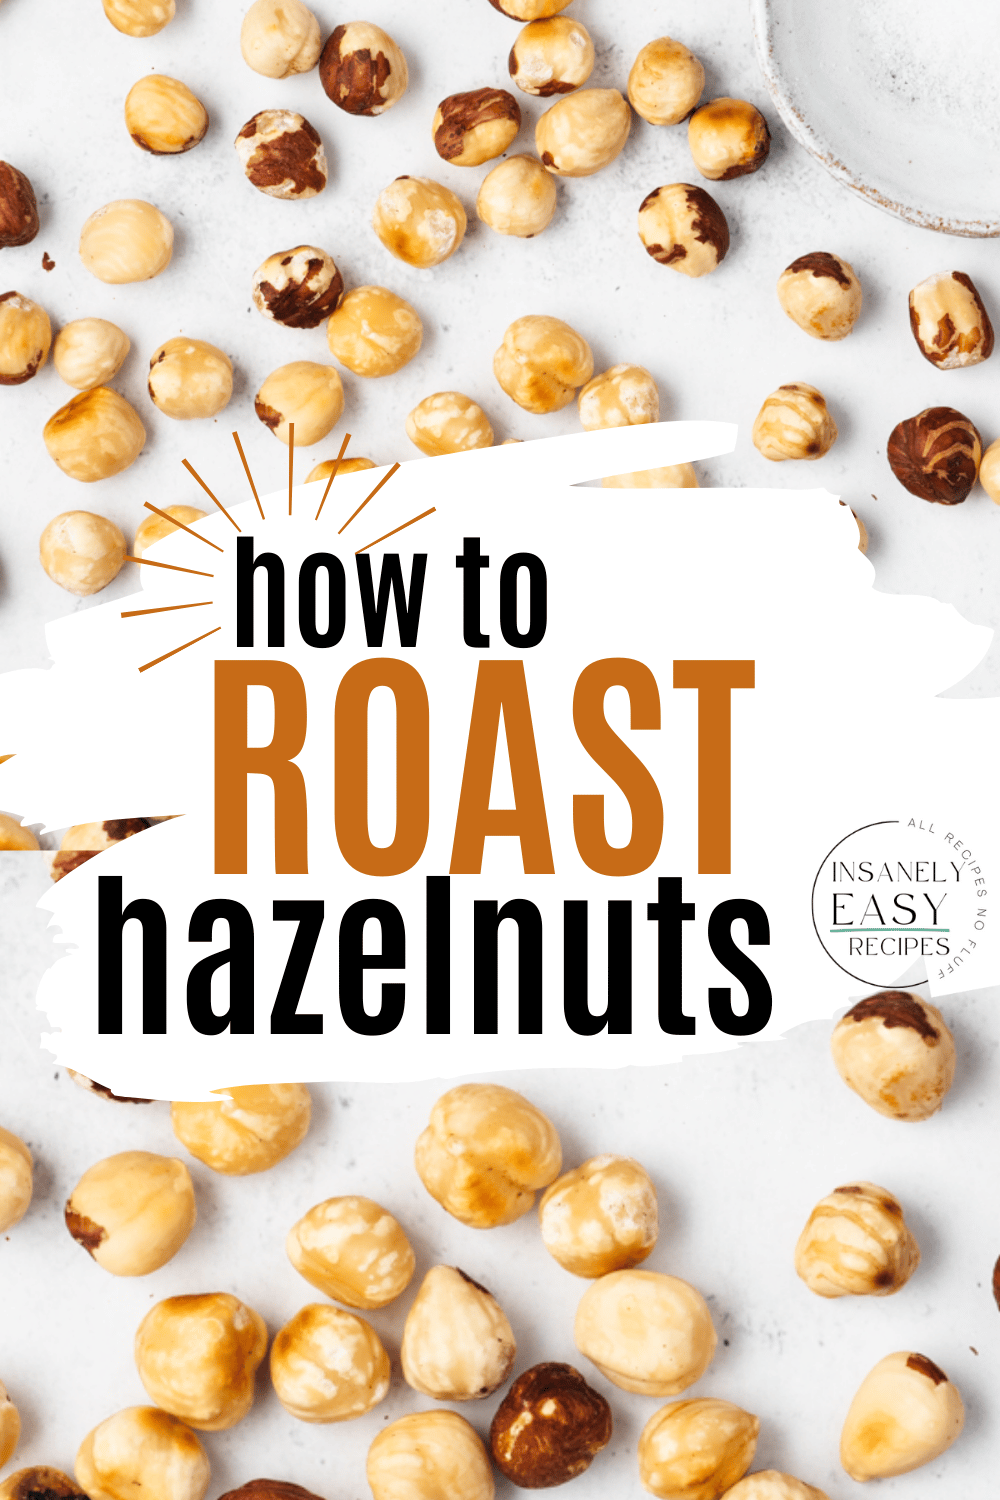 Pinterest collage of photo of roasted hazelnuts